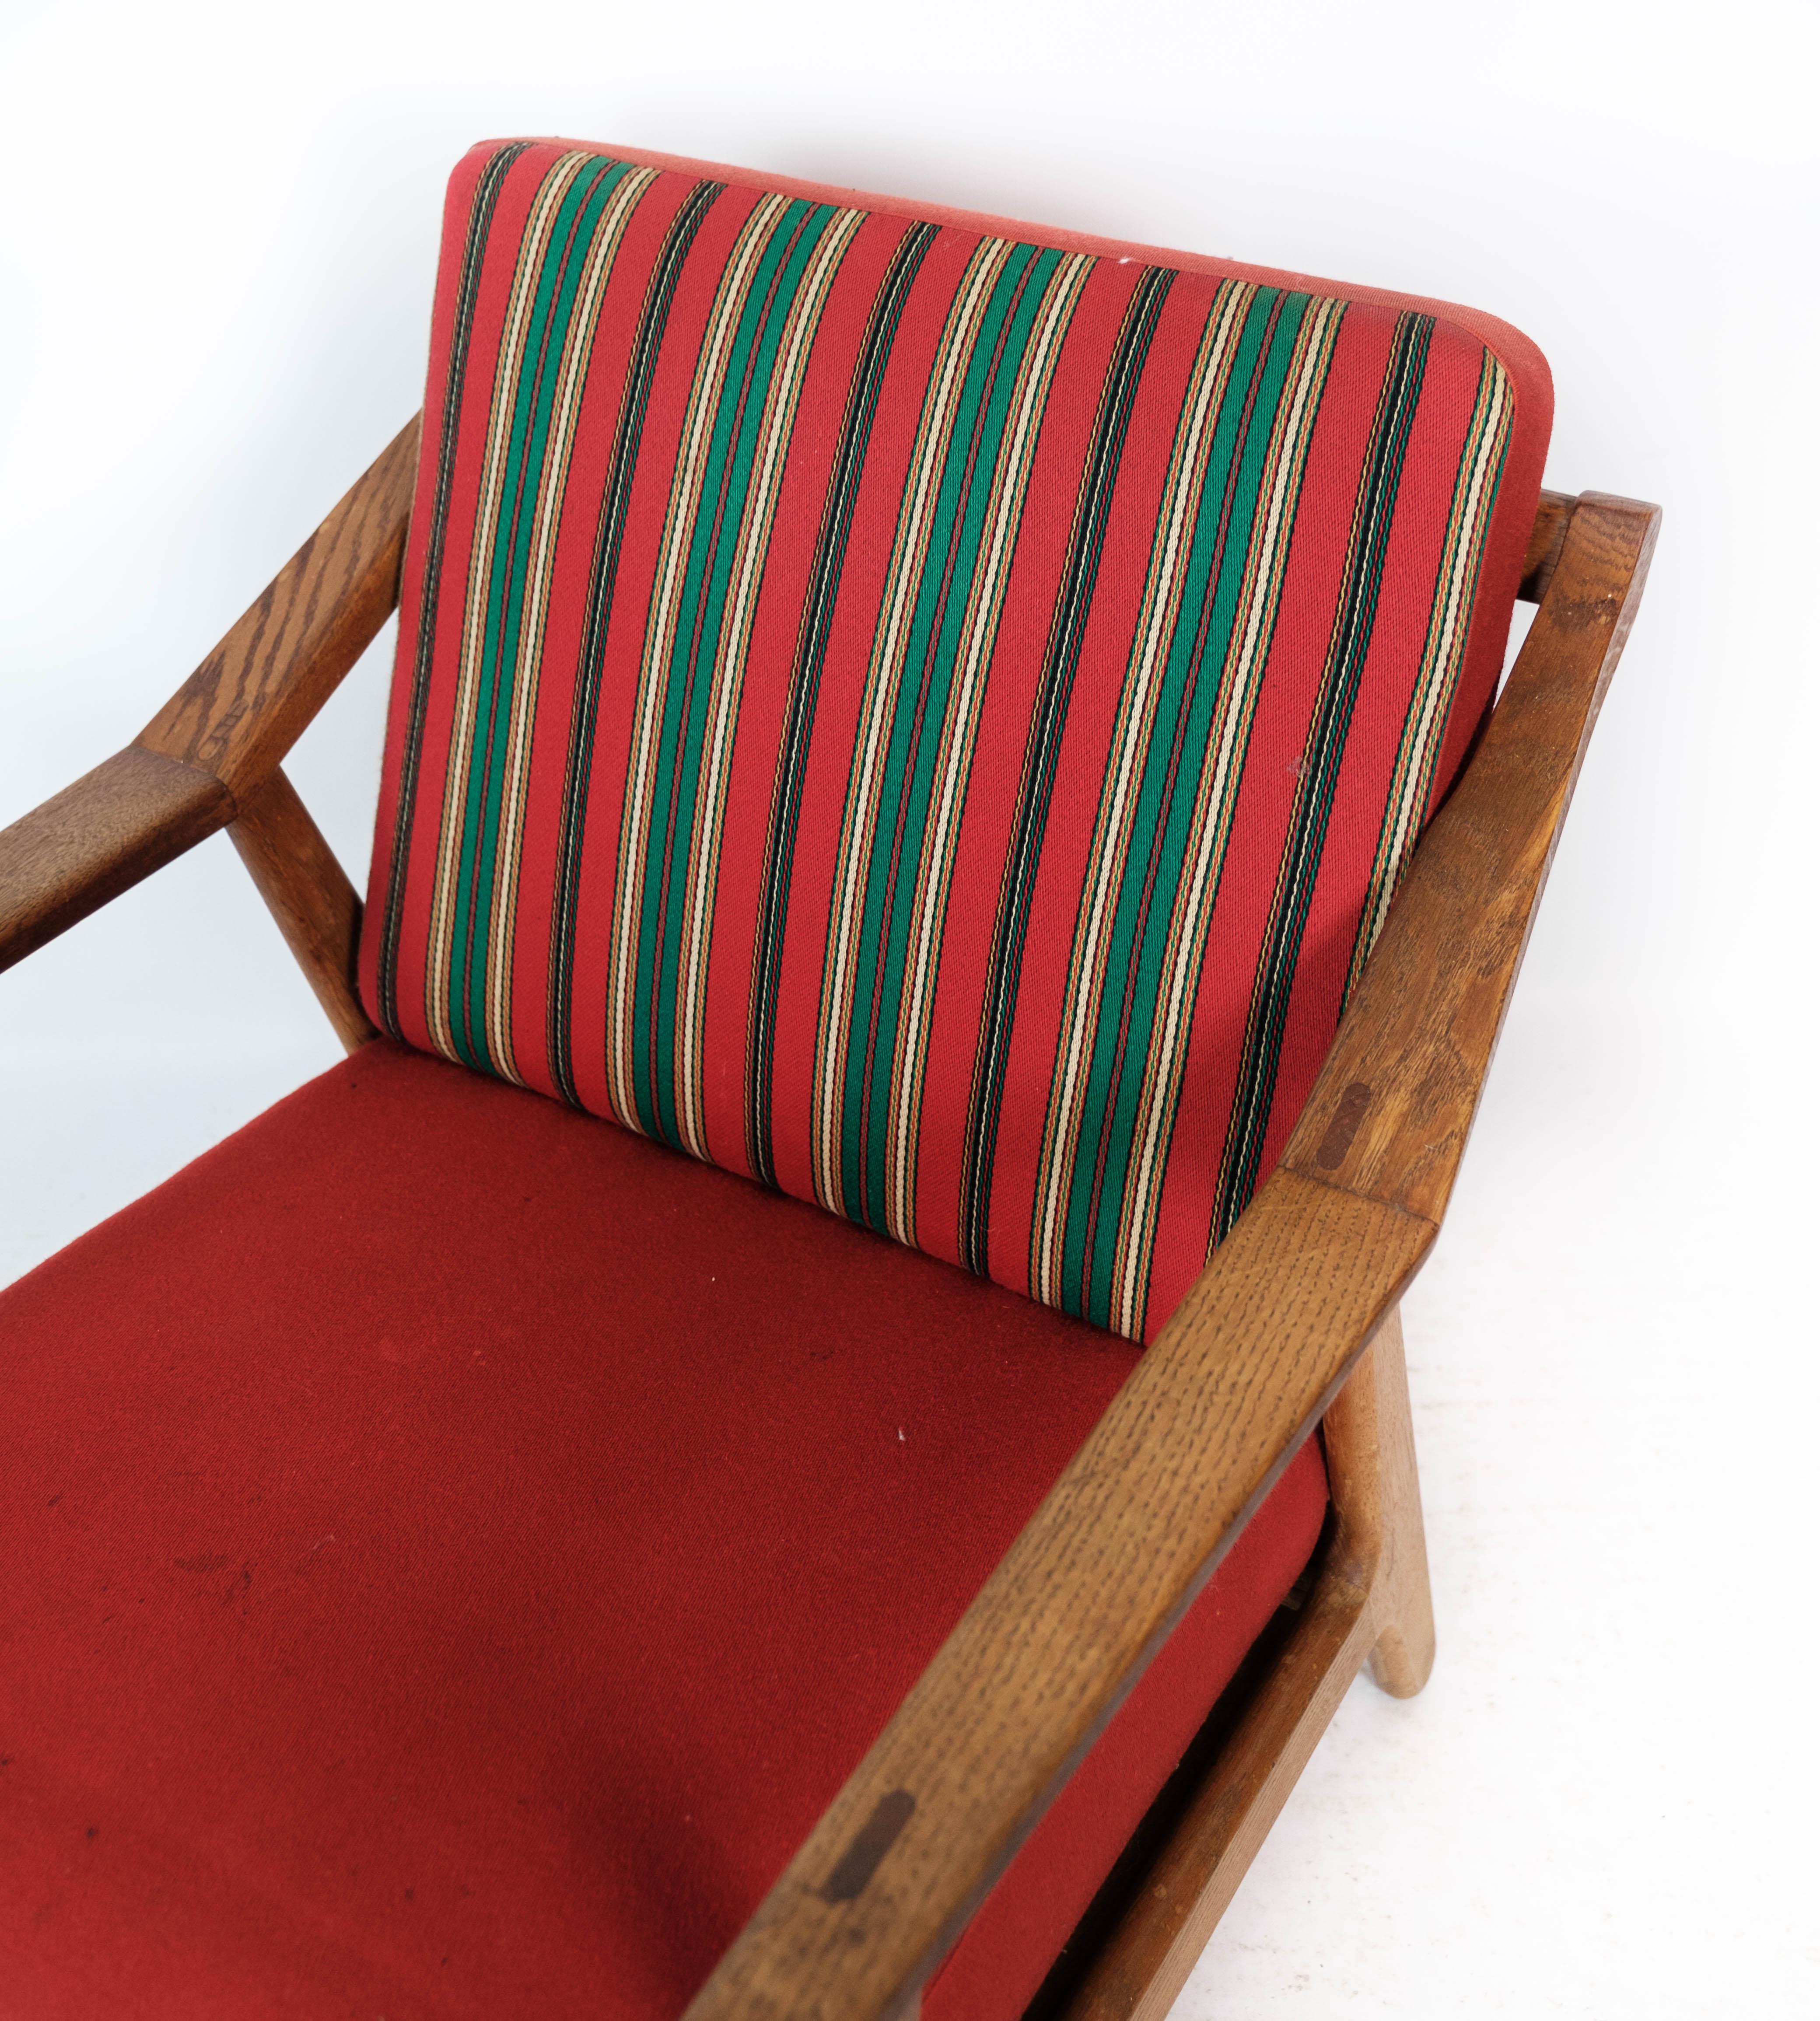 Sessel aus Eiche und mit rotem Stoff bezogen, entworfen von H. Brockmann Petersen in den 1960er Jahren. Der Stuhl ist in einem sehr guten Vintage-Zustand.